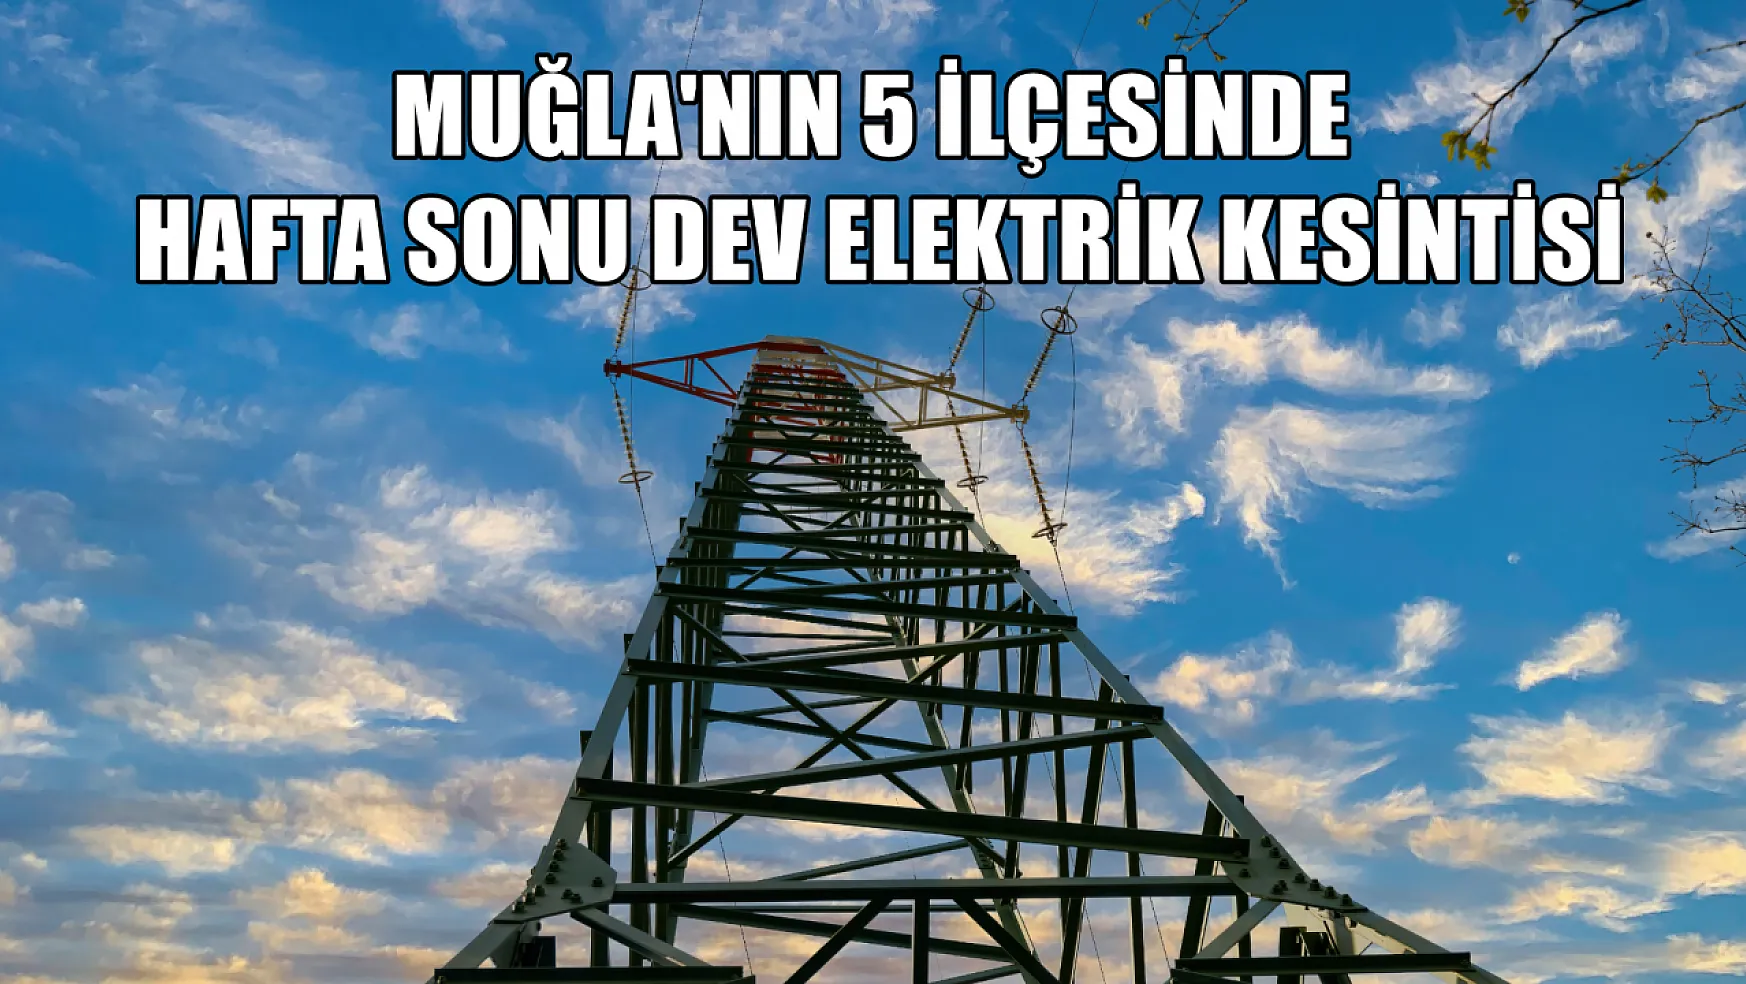 Muğla'nın 5 ilçesinde hafta sonu dev elektrik kesintisi! Fethiye'de de kesilecek! 23-24-25 Mart elektrik kesintisi detaylar..